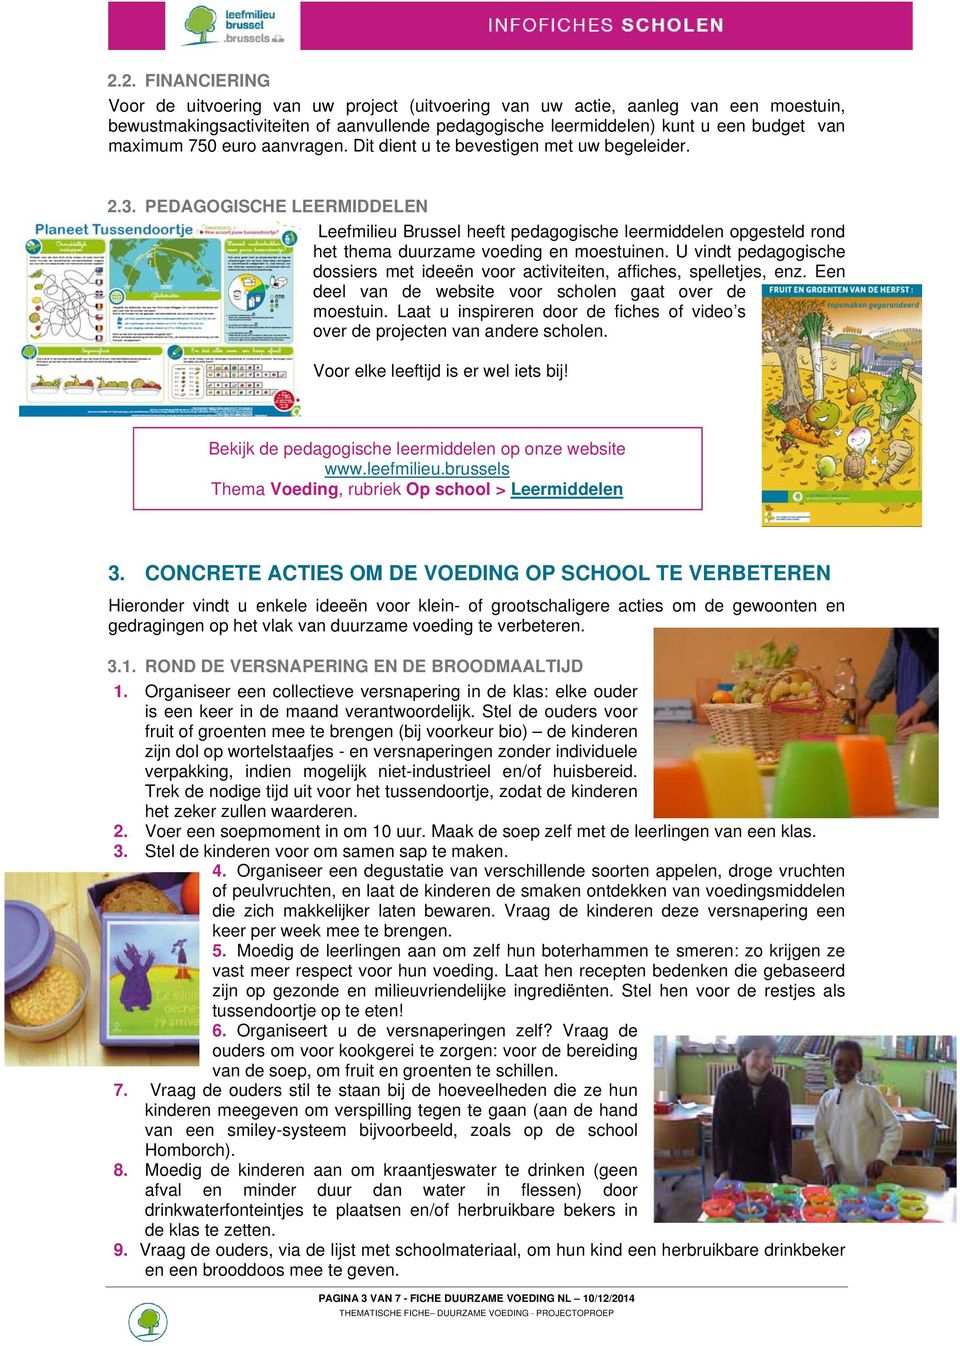 PEDAGOGISCHE LEERMIDDELEN Leefmilieu Brussel heeft pedagogische leermiddelen opgesteld rond het thema duurzame voeding en moestuinen.